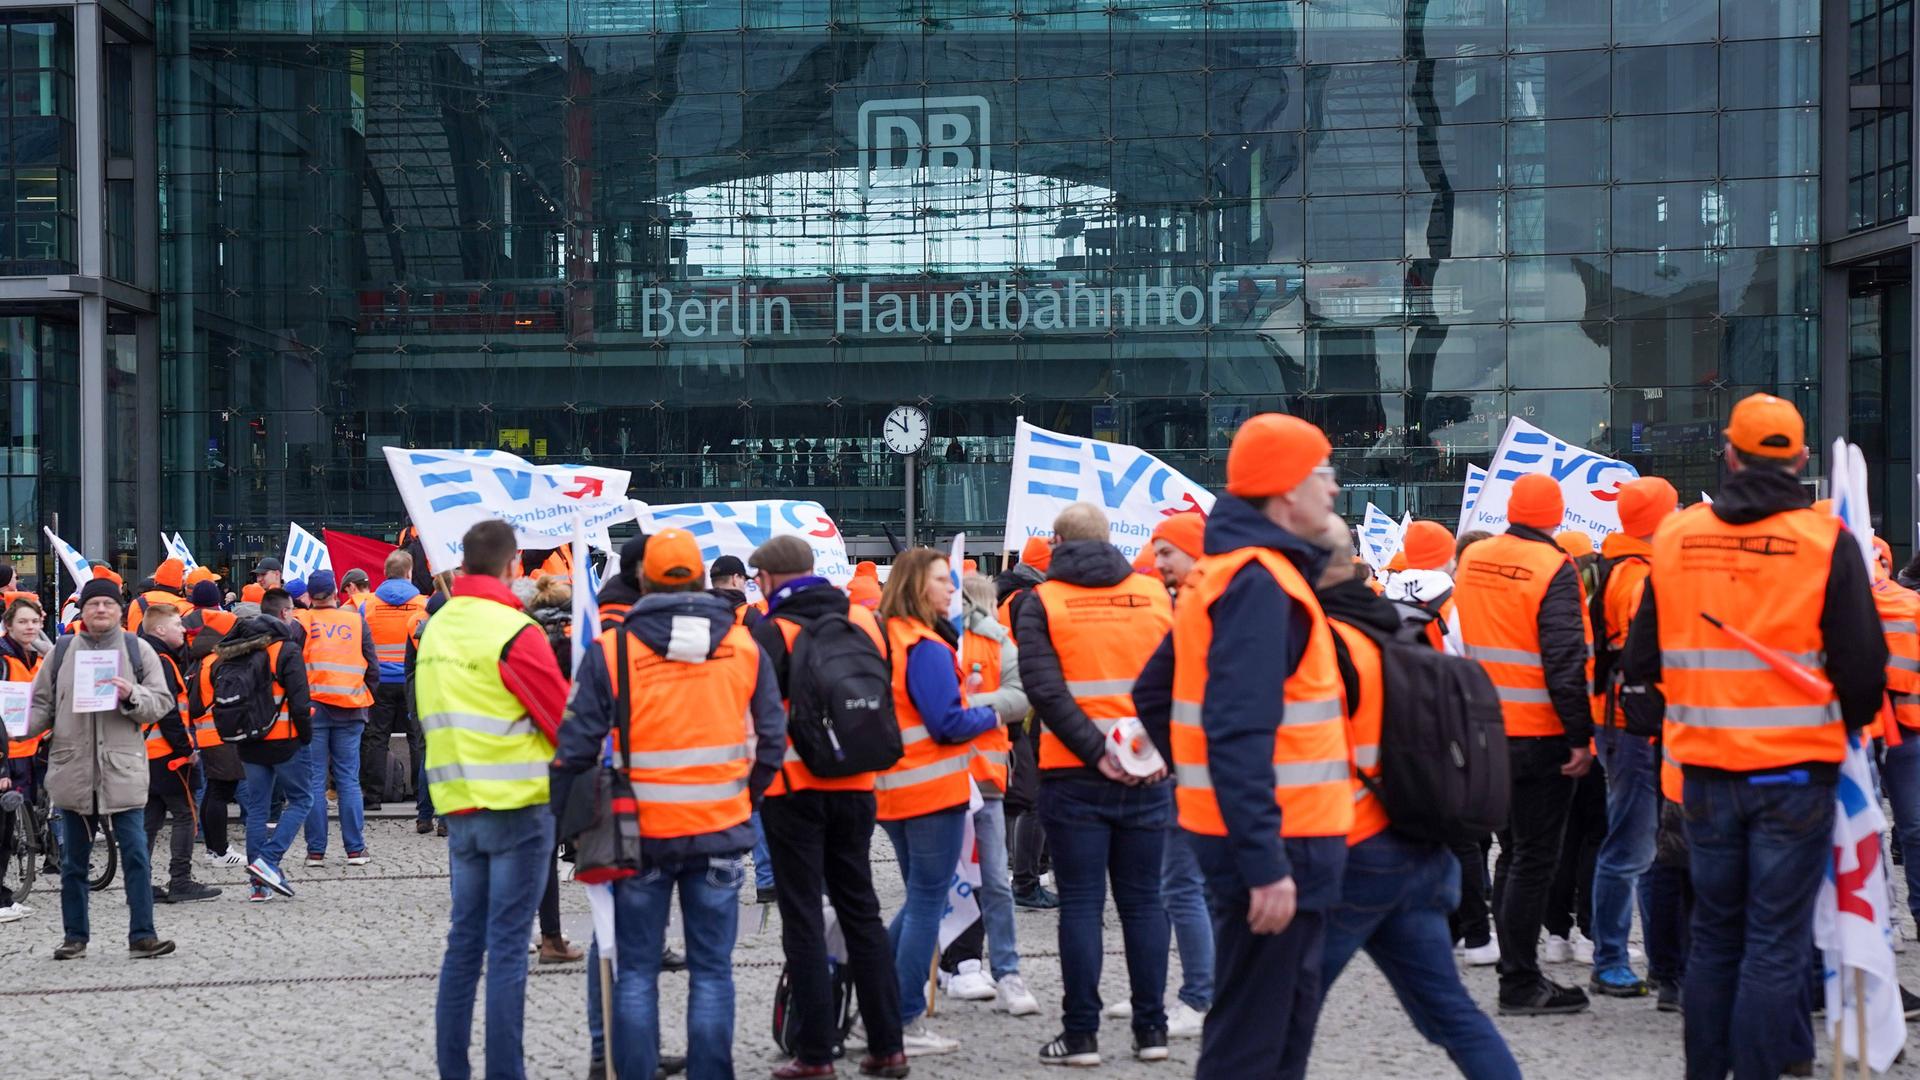 Berlin, Deutschland: Demonstration der EVG vor dem Berliner Hauptbahnhof. Mehrere Personen haben orangene Westen an und einige halten EVG-Fahnen in der Hand.